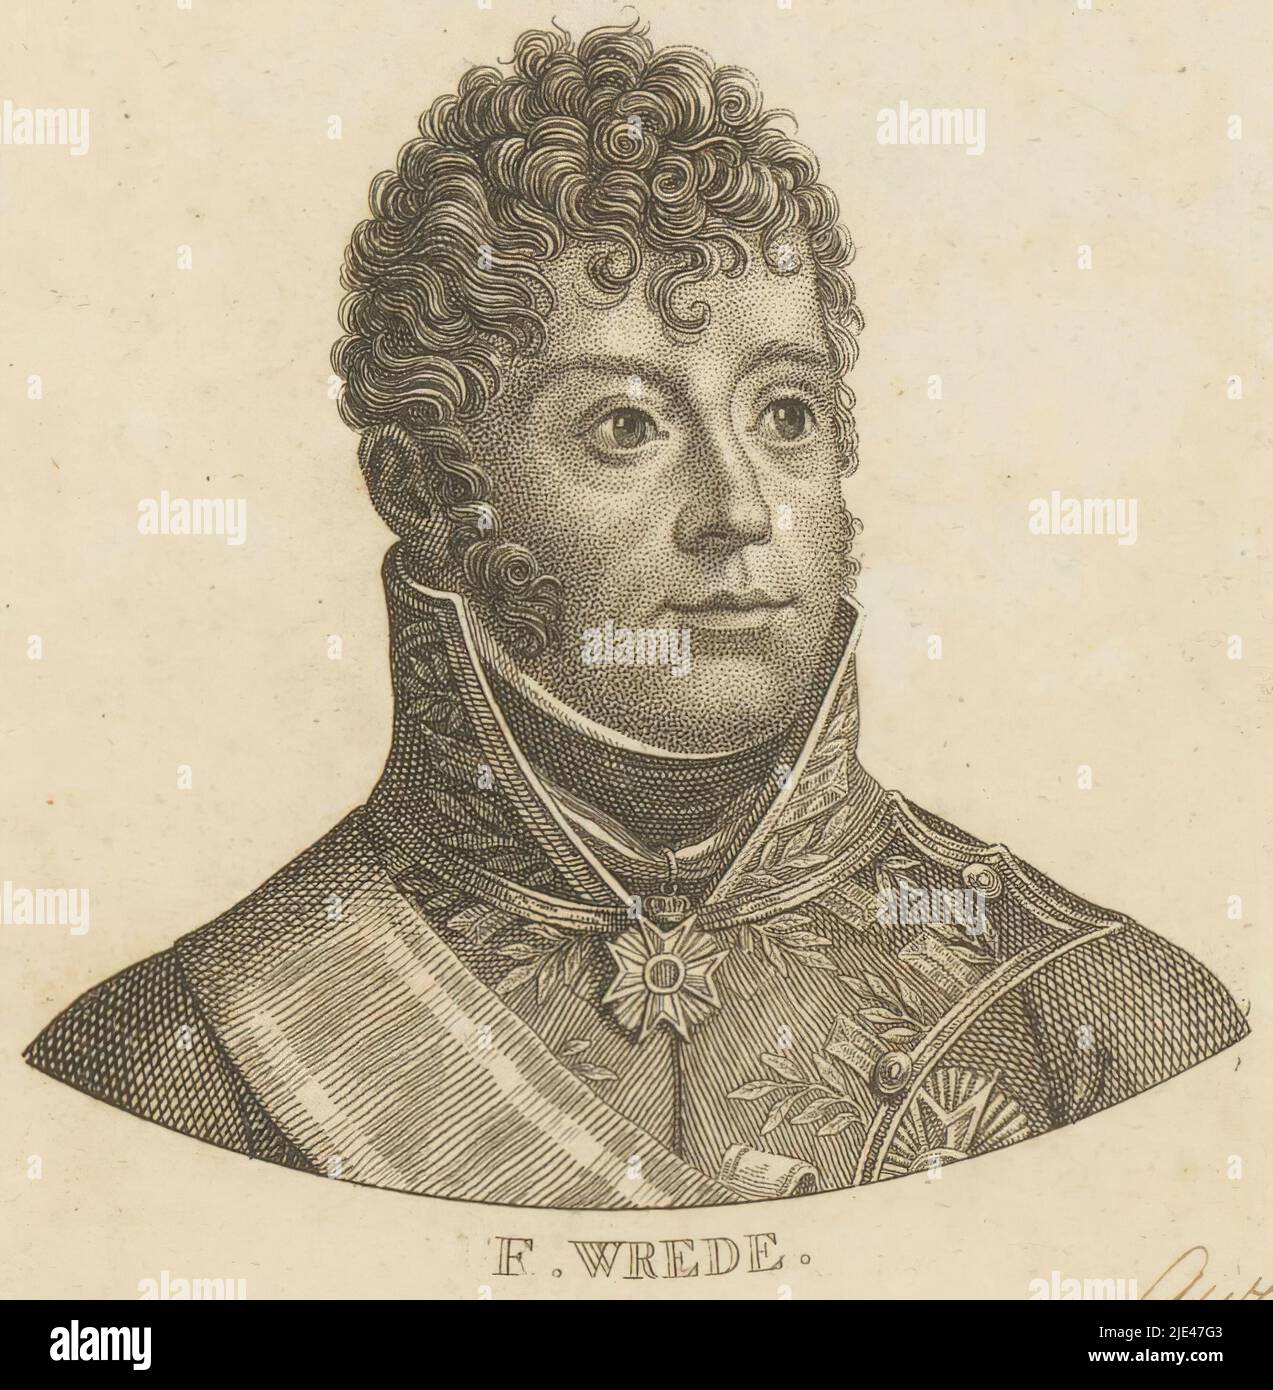 Portrait of Carl Philipp von Wrede, Ernst Ludwig Riepenhausen, 1775 - 1840, print maker: Ernst Ludwig Riepenhausen, 1775 - 1840, paper, engraving, h 106 mm - w 80 mm Stock Photo